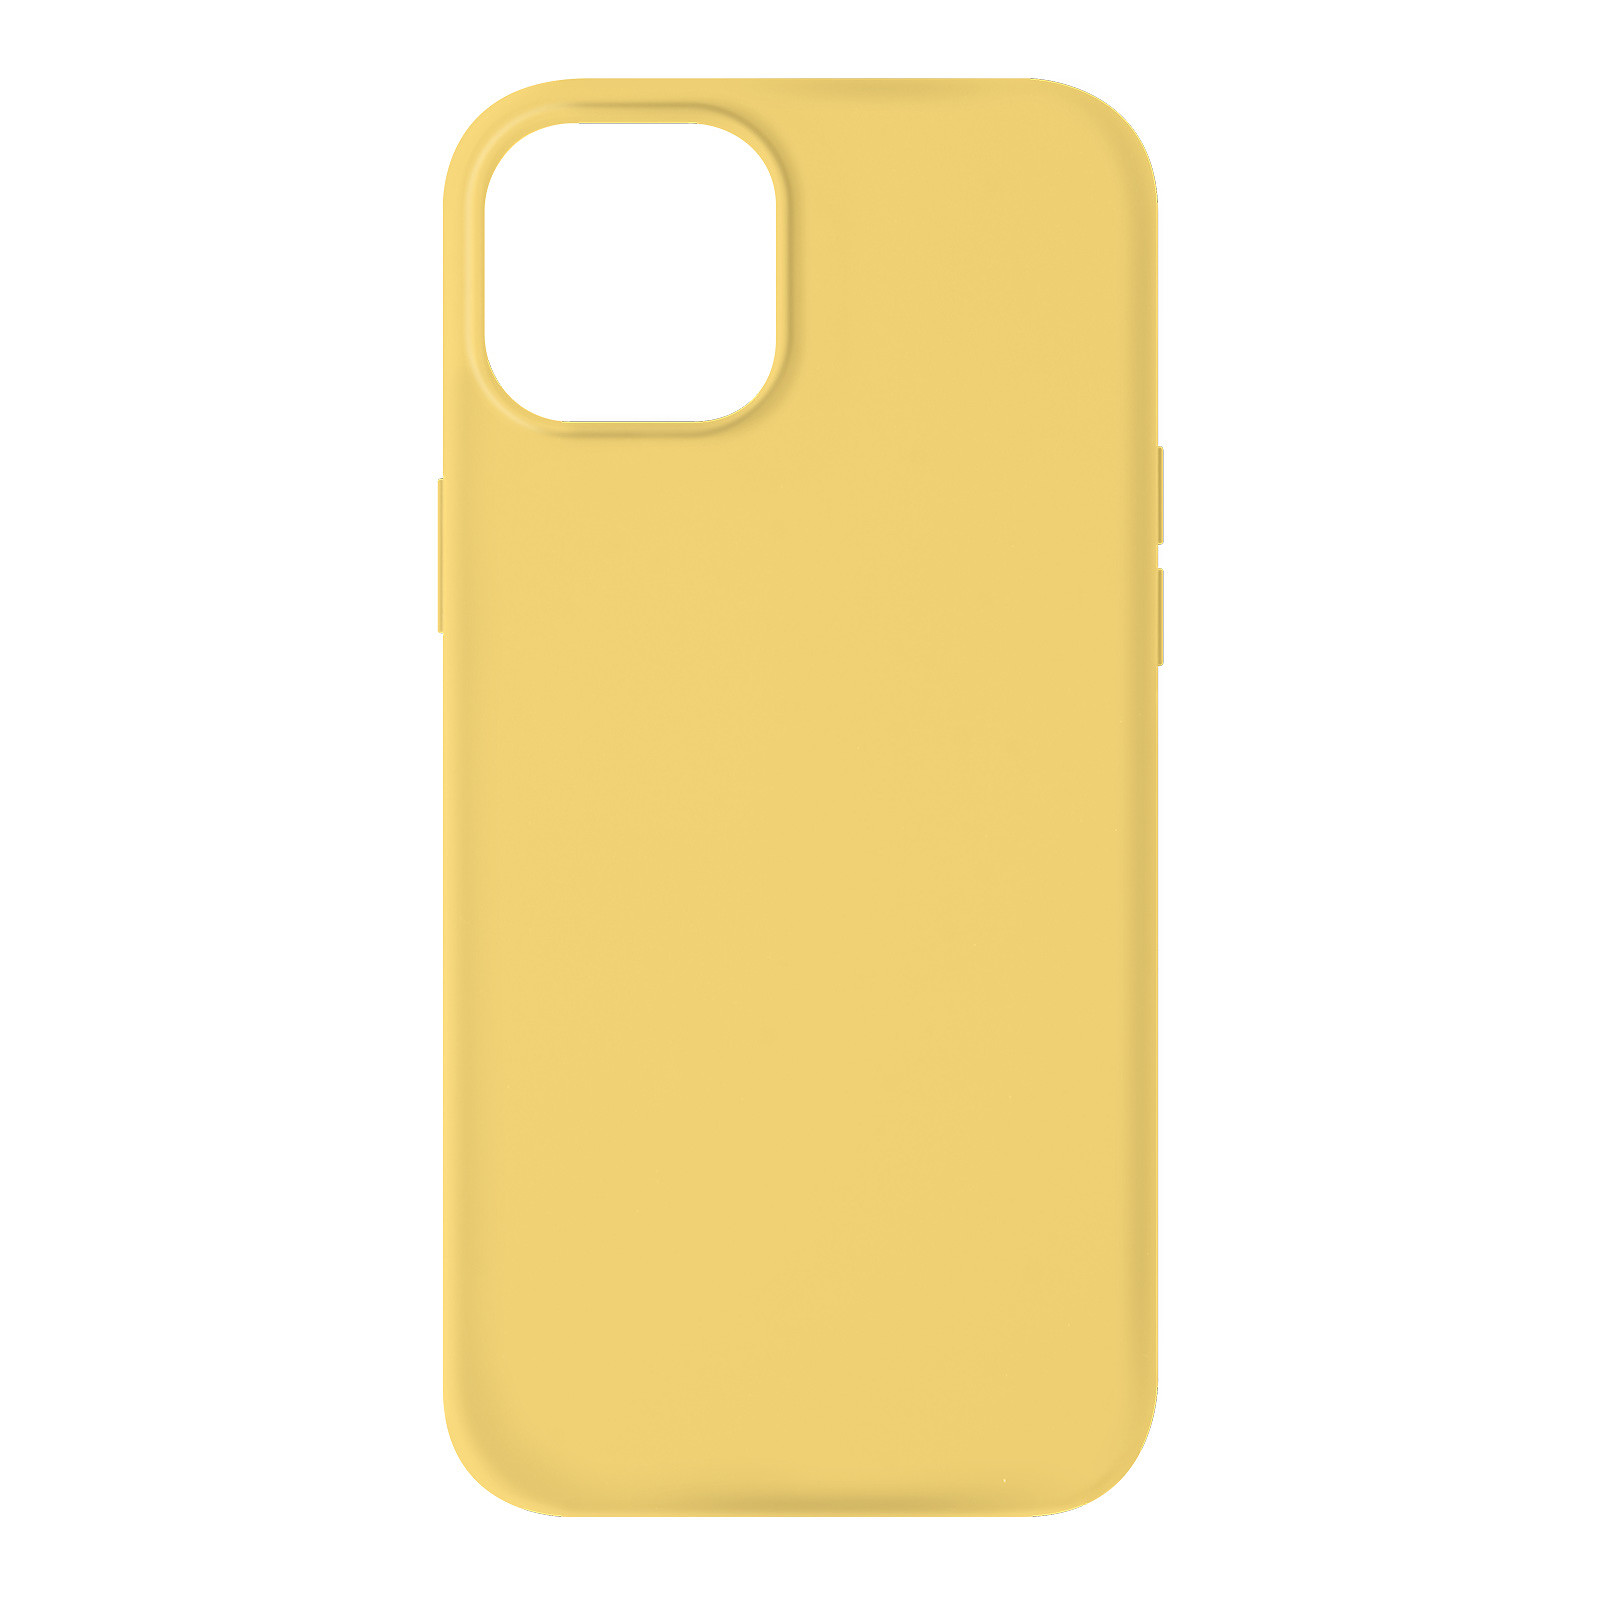 Avizar Coque pour iPhone 13 Mini Silicone Semi-rigide Finition Soft-touch jaune - Coque telephone Avizar